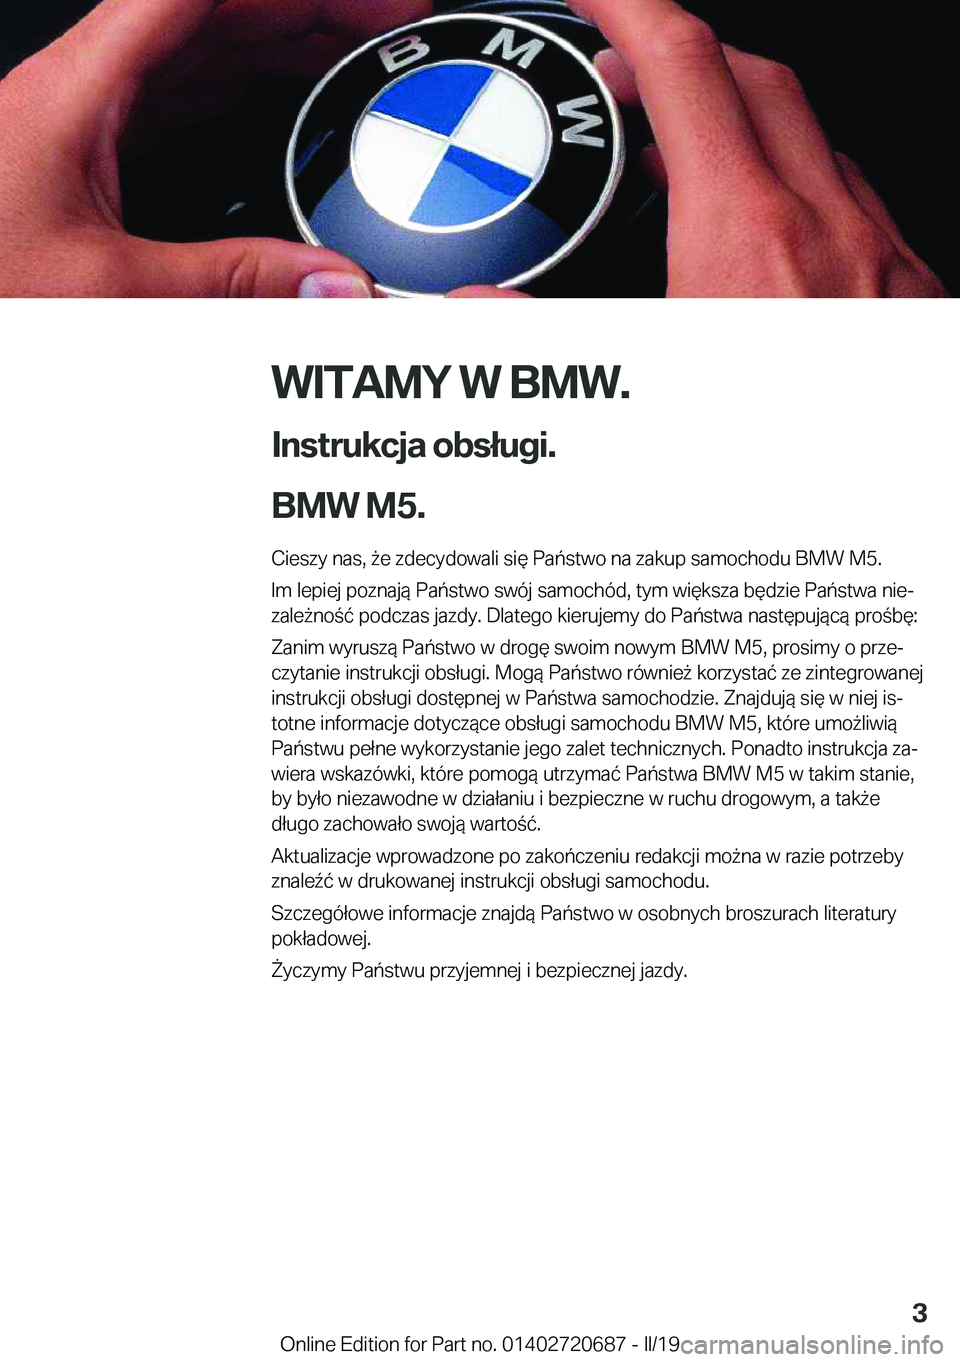 BMW M5 2019  Instrukcja obsługi (in Polish) �W�I�T�A�M�Y��W��B�M�W�.
�I�n�s�t�r�u�k�c�j�a��o�b�s�ł�u�g�i�.
�B�M�W��M�5�. �C�i�e�s�z�y��n�a�s�,�9�e��z�d�e�c�y�d�o�w�a�l�i��s�i�